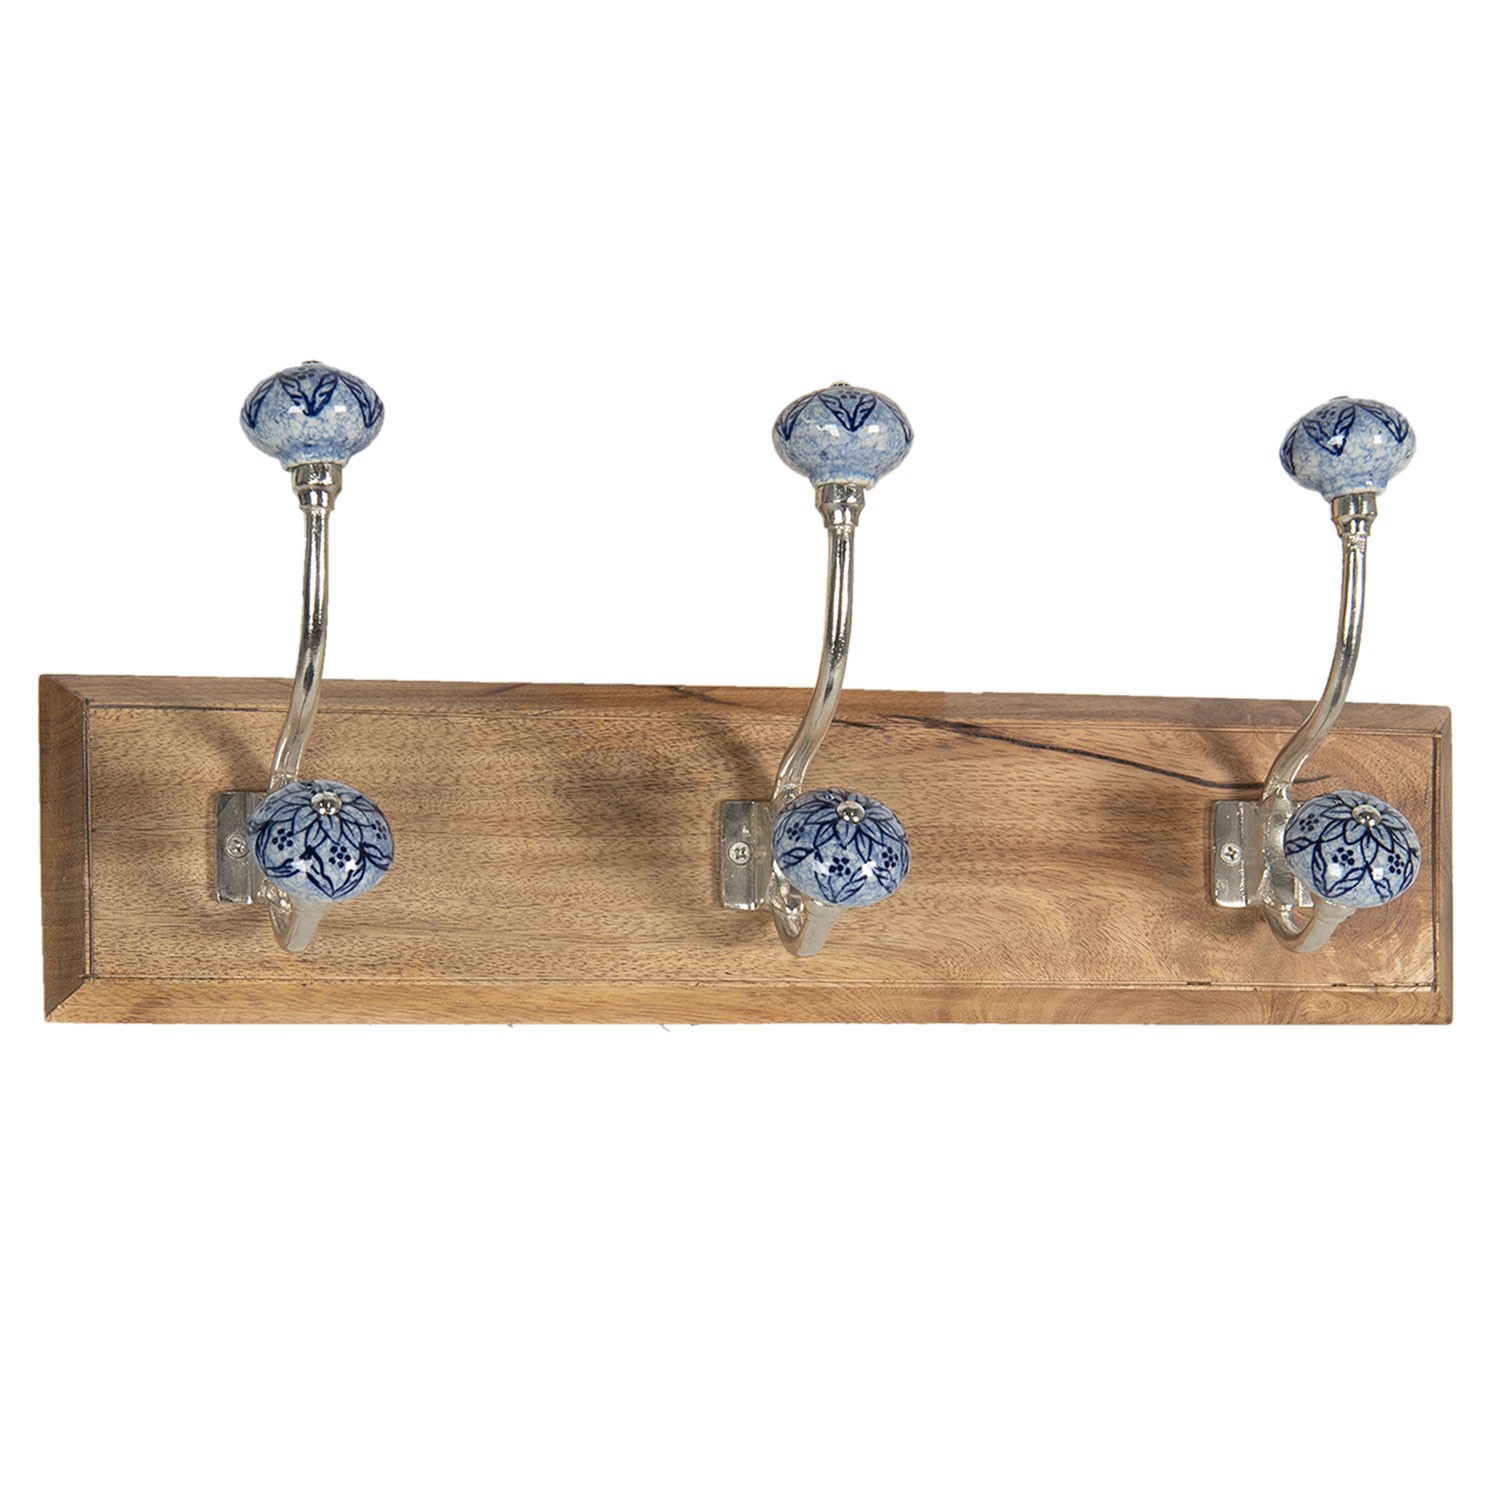 Dřevěný věšák s modrými keramickými knopkami - 44*10*17 cm 6H1957